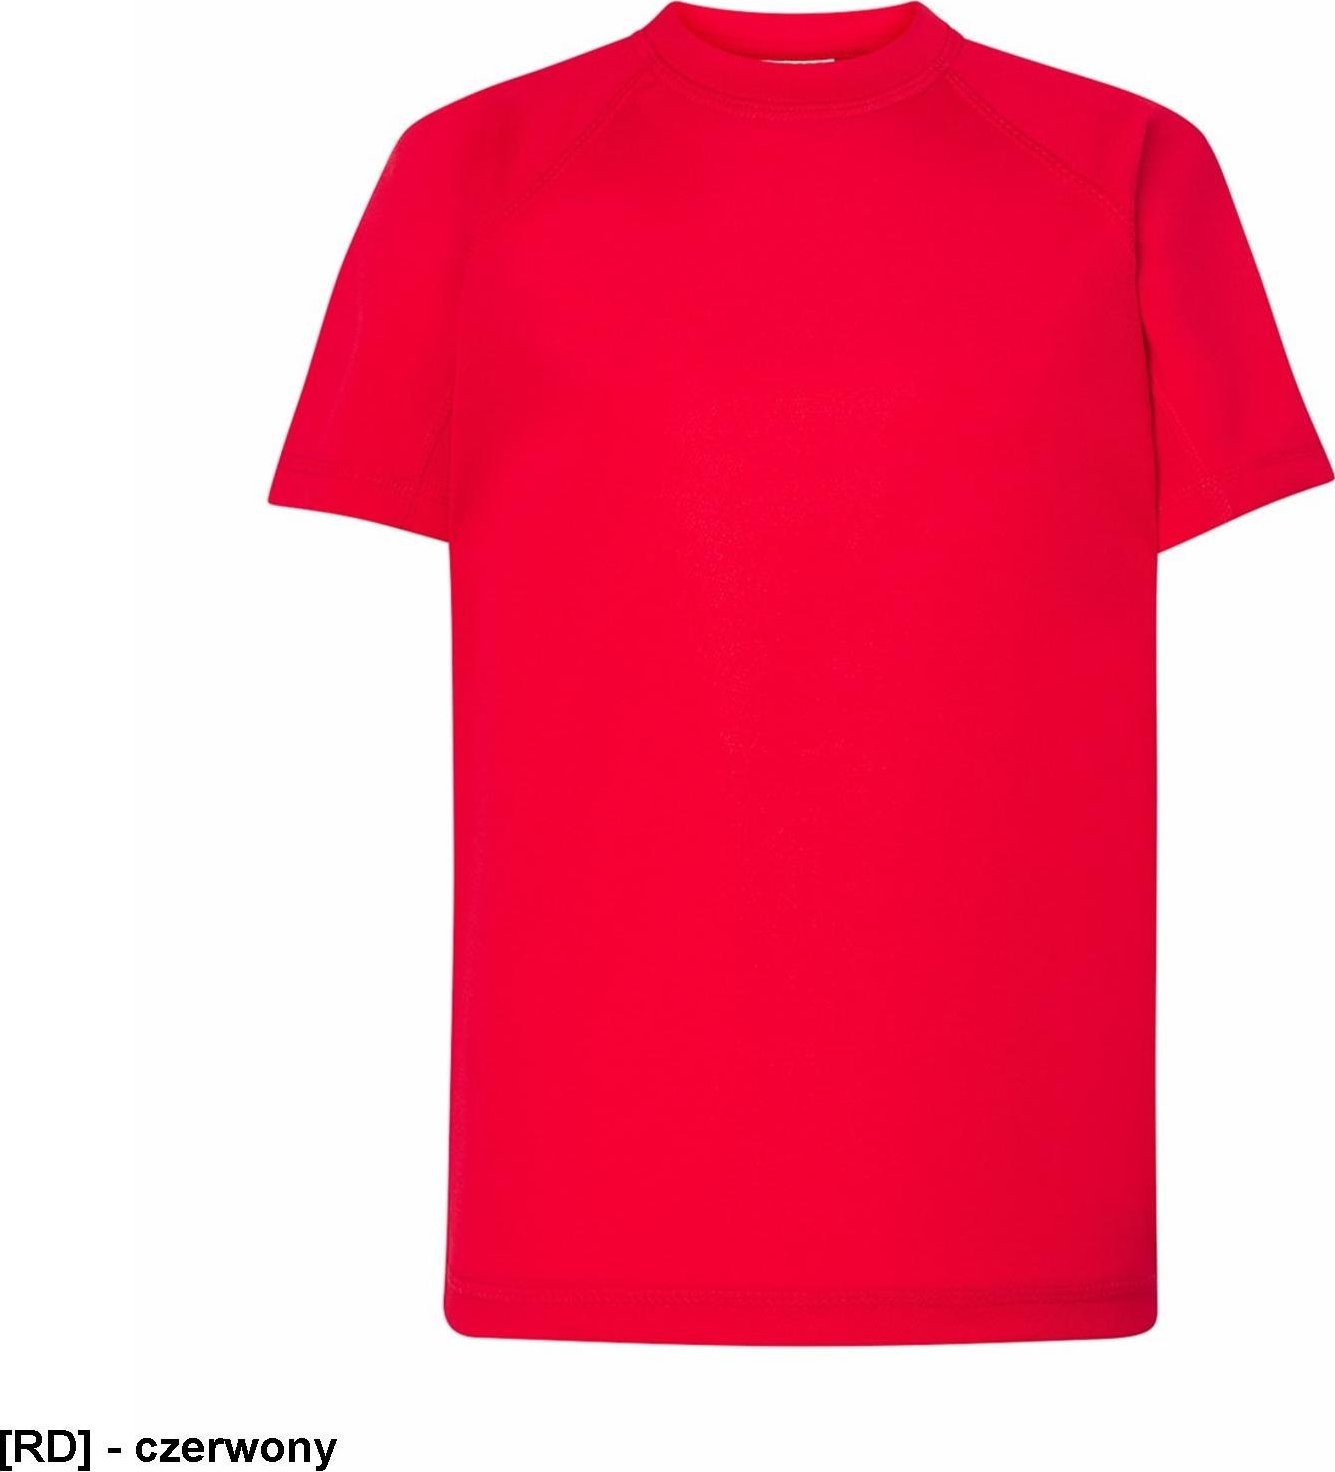 JHK TSRKSPOR SPORT KID - T-shirt dziecięcy z krótkim rękawem - czerwony - wzrost 110-152cm. 5-6